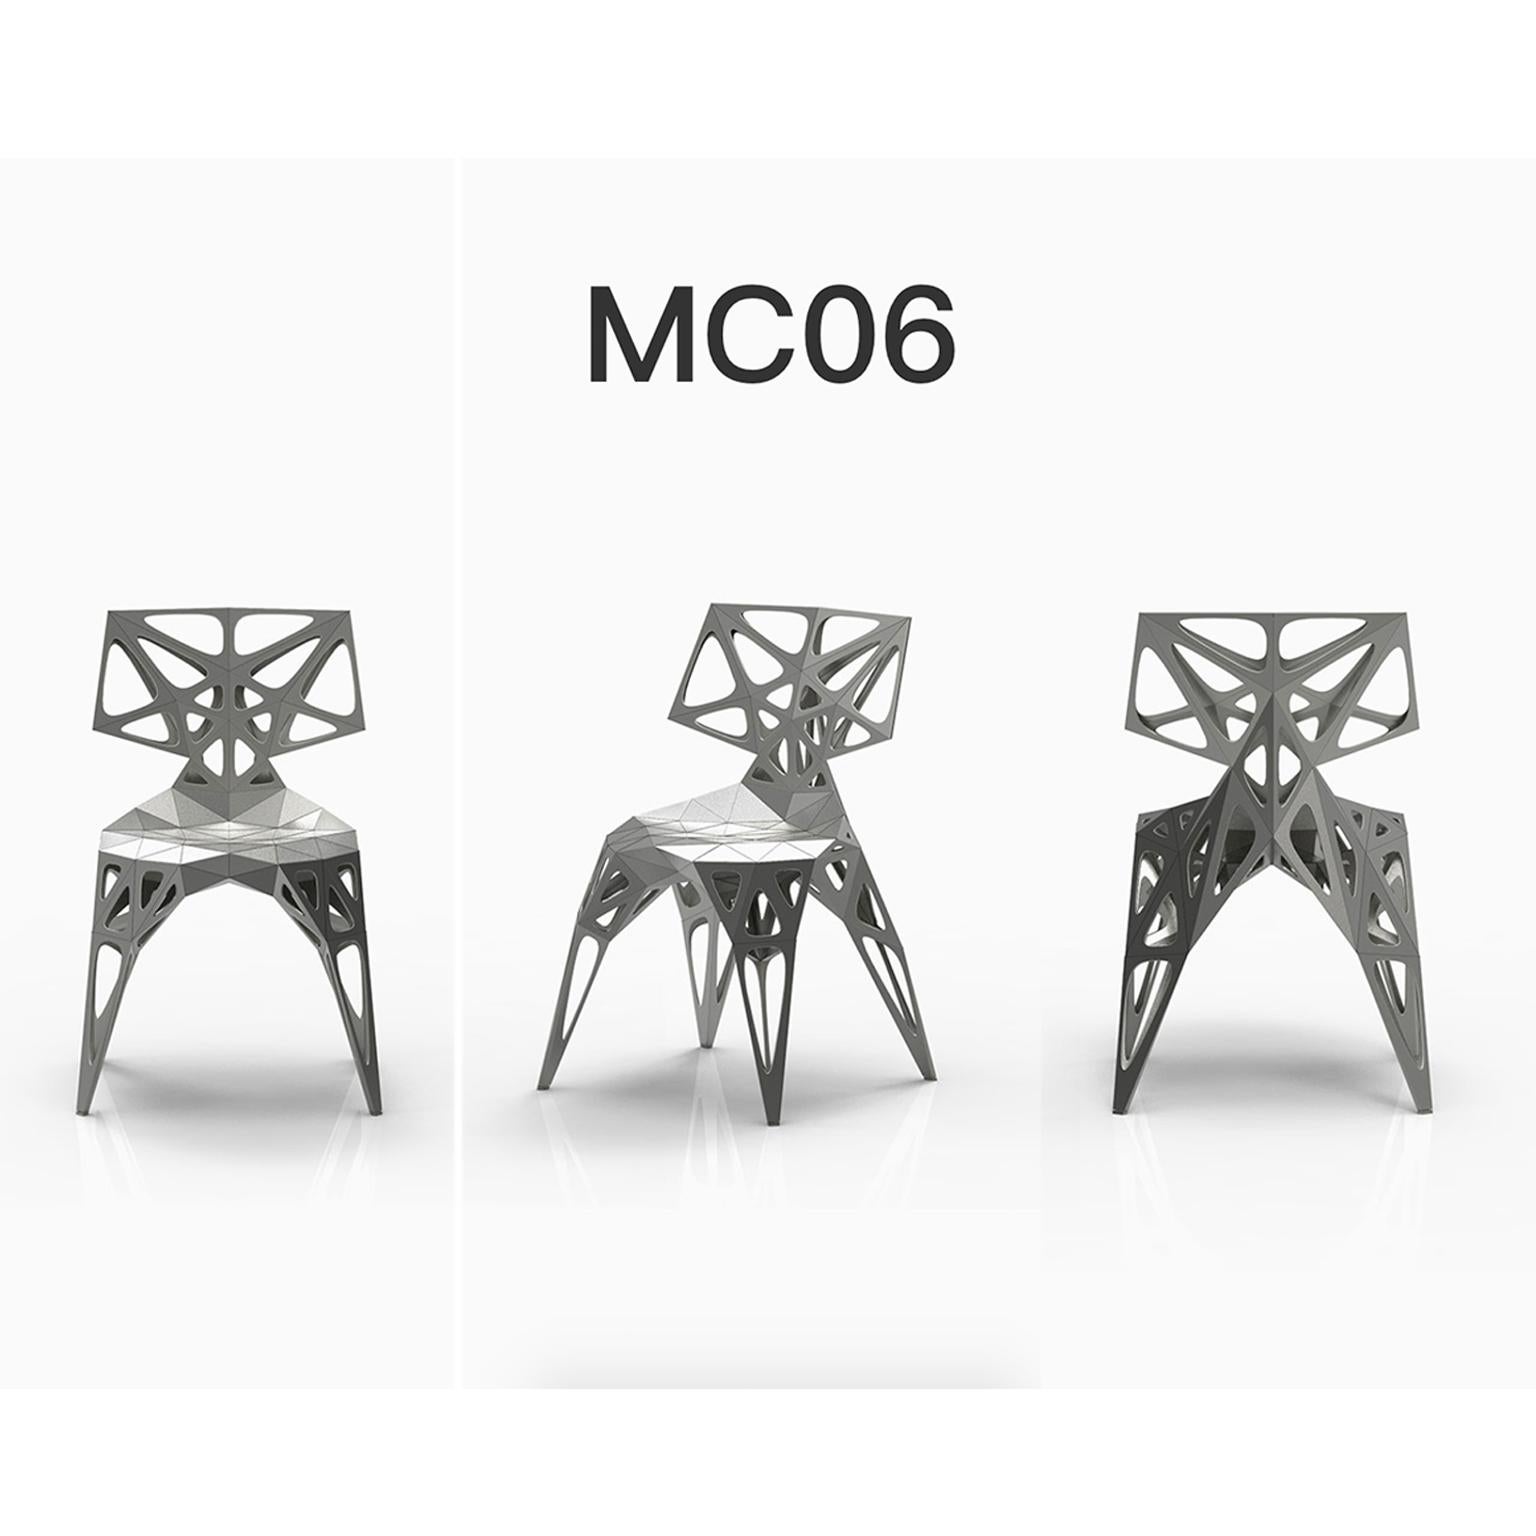 outdoor+Indoor
3 offizielle Typen Stühle / verfügbar
solide
punkte
rahmen
2 Farben offiziell / verfügbar / Ausführung in poliert/matt
schwarz
silber

Der Möbeldesigner Zhoujie Zhang ist bekannt für die Integration von automatisiertem